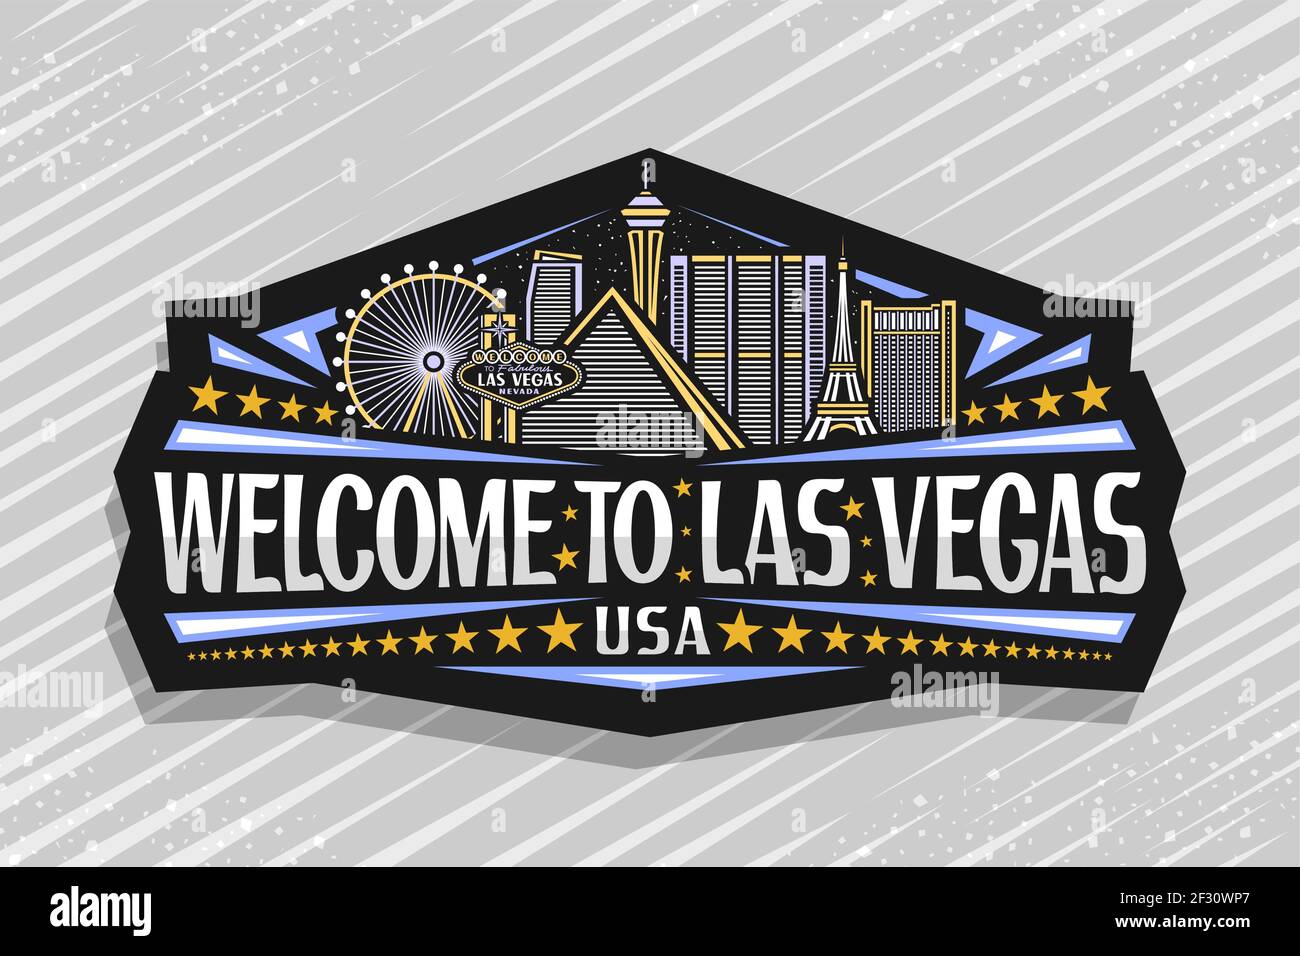 Las Vegas Strip Casino Foto Magnet Amerika USA Souvenir Fridge 